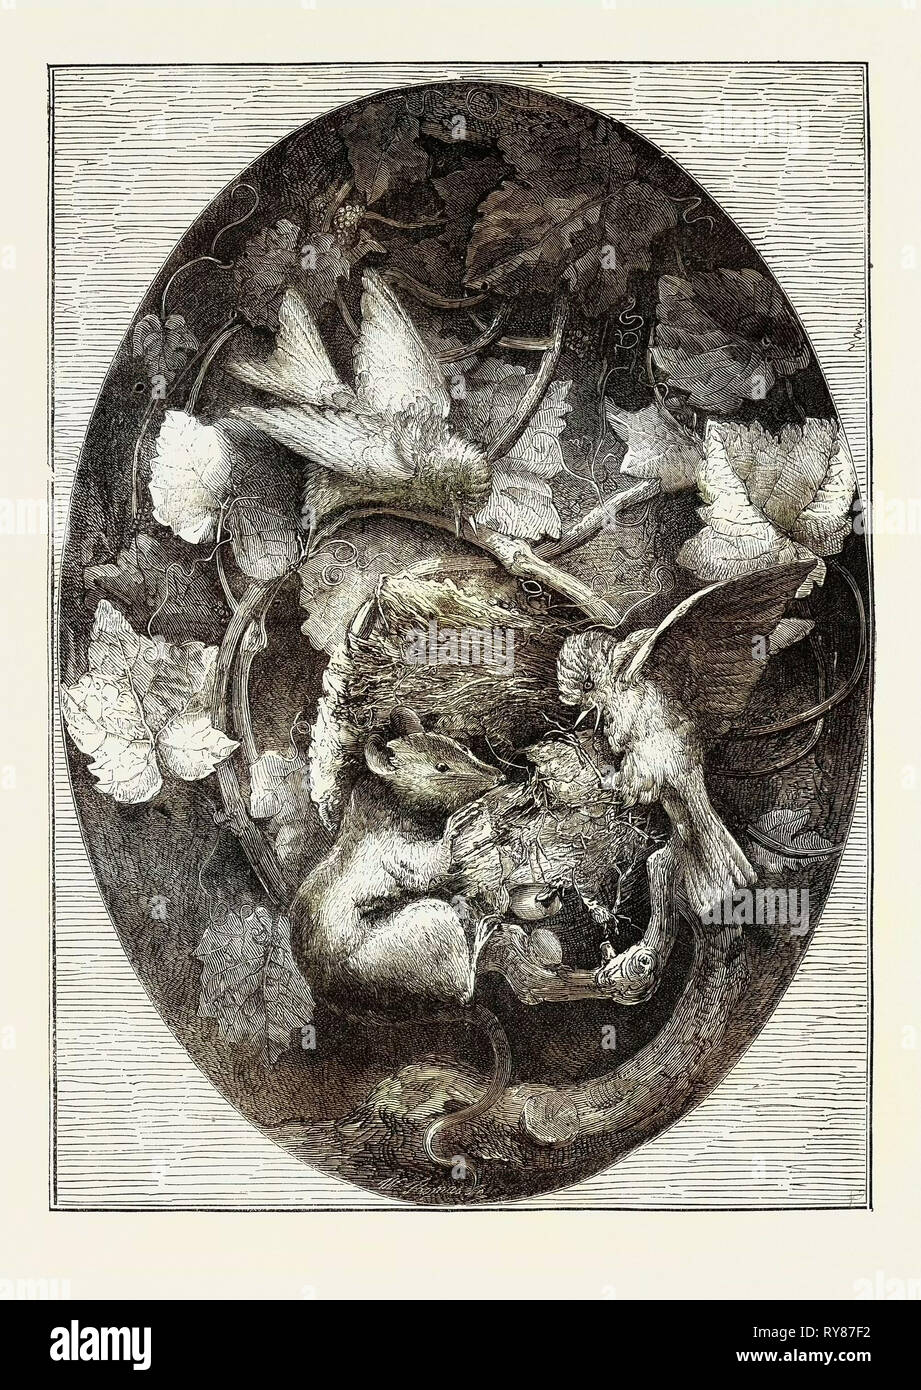 Die internationale Ausstellung: hänflinge verteidigt ihr Nest gegen einen Siebenschläfer, Modellieren in Wachs, 1862 Stockfoto